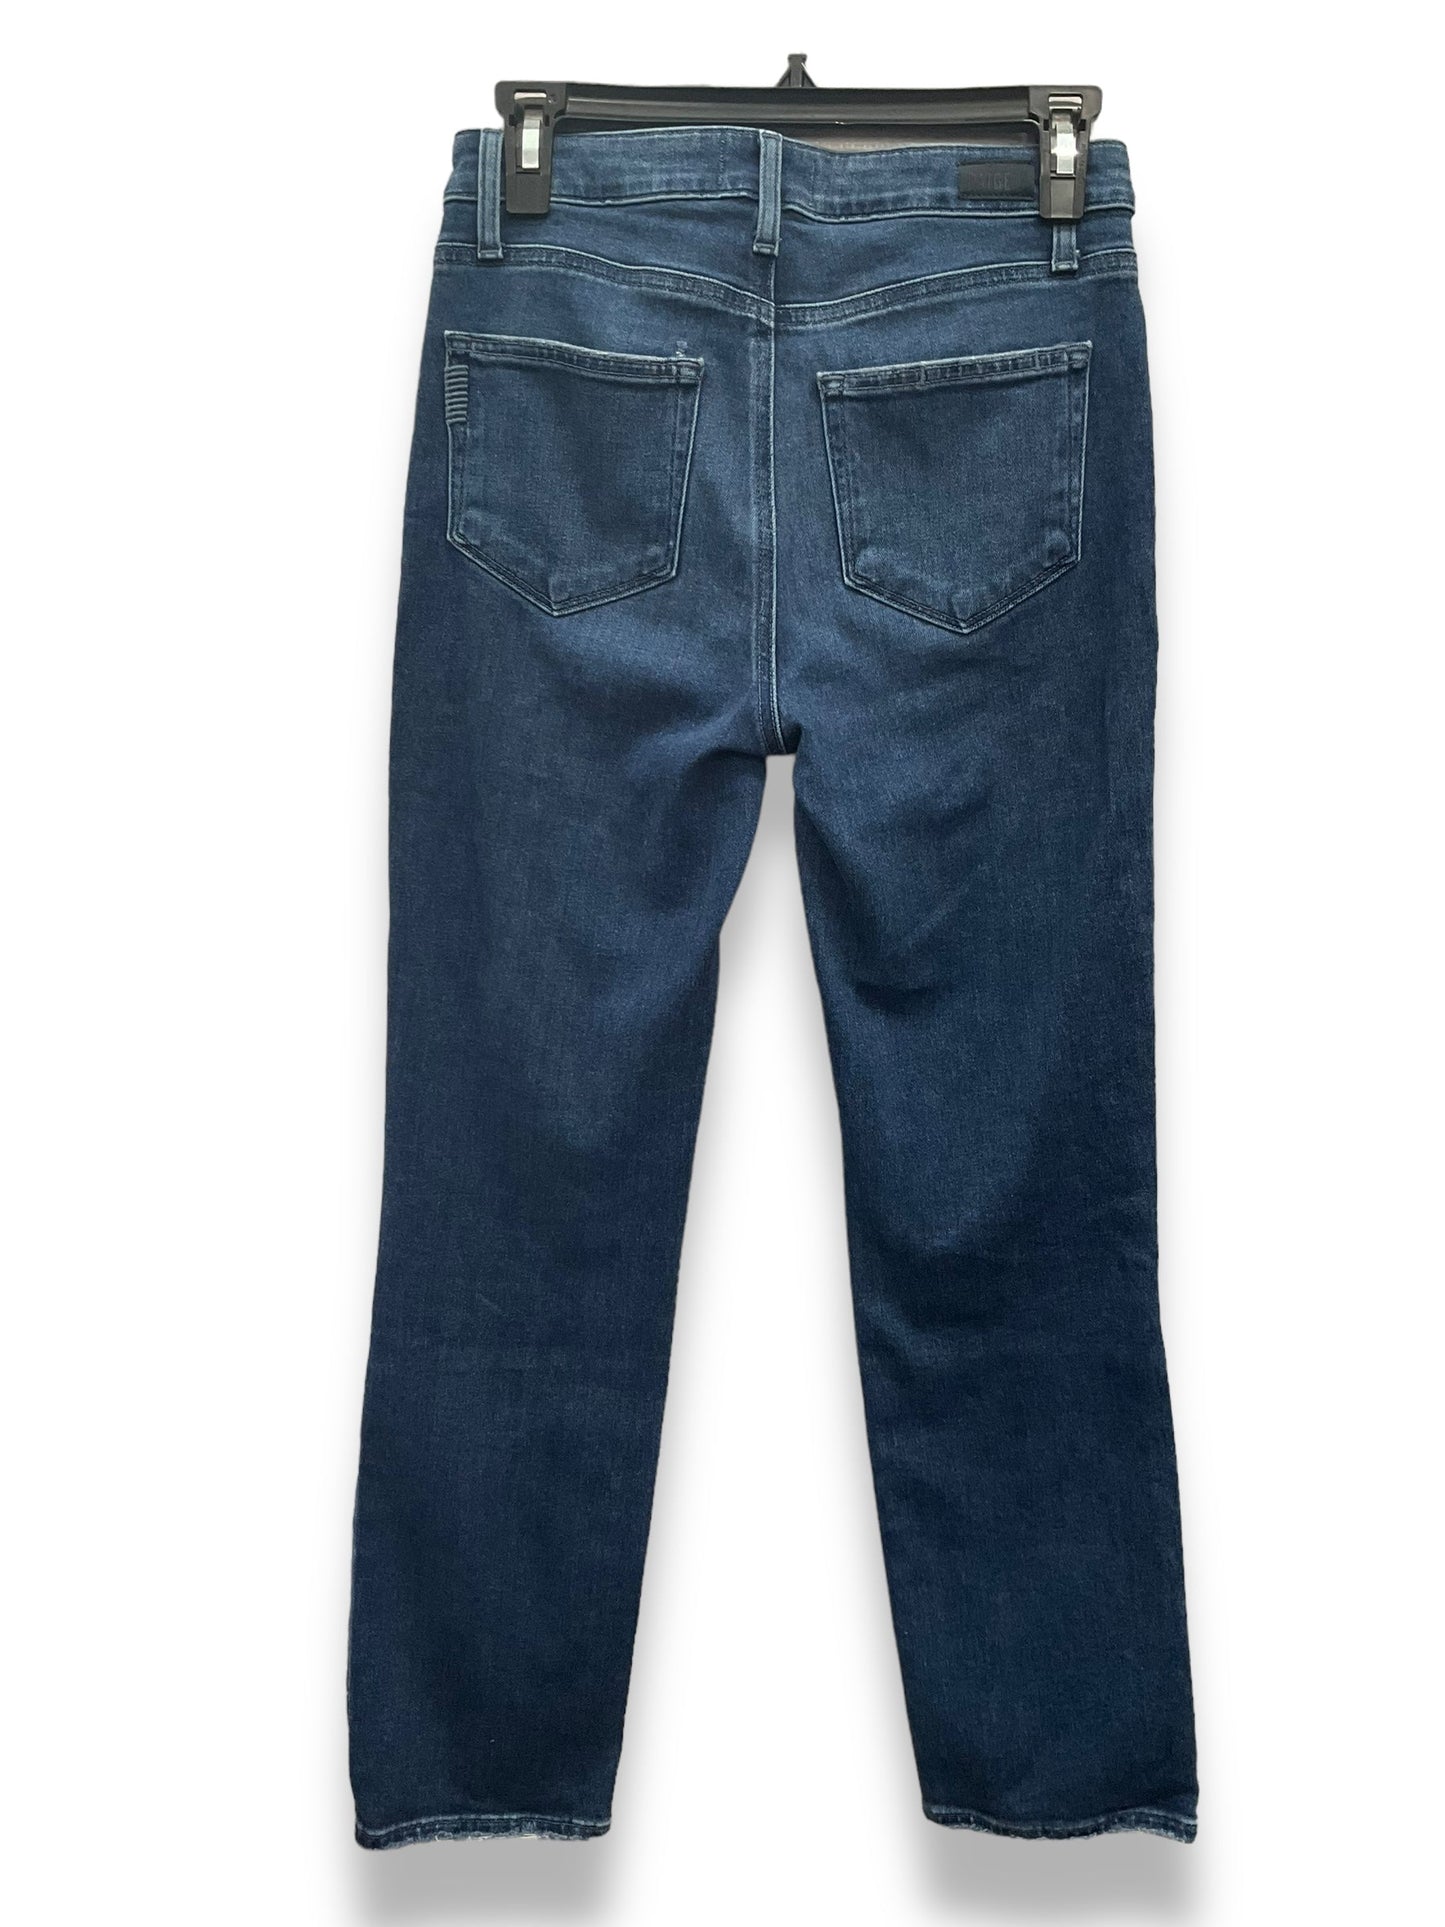 Blue Denim Jeans Straight Paige, Size 4